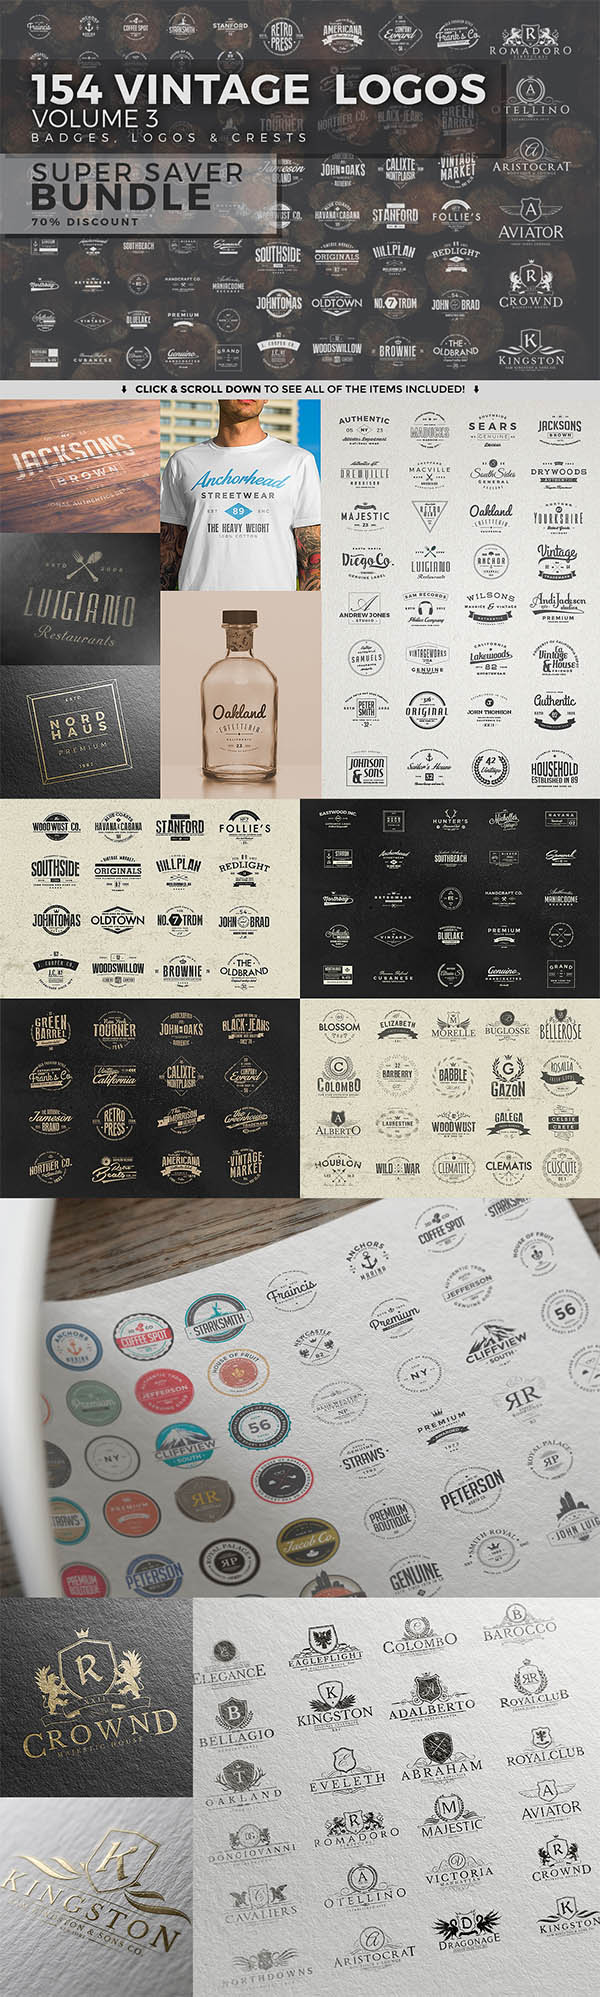 350 Vintage Logos, Badges and Labels Set - 4